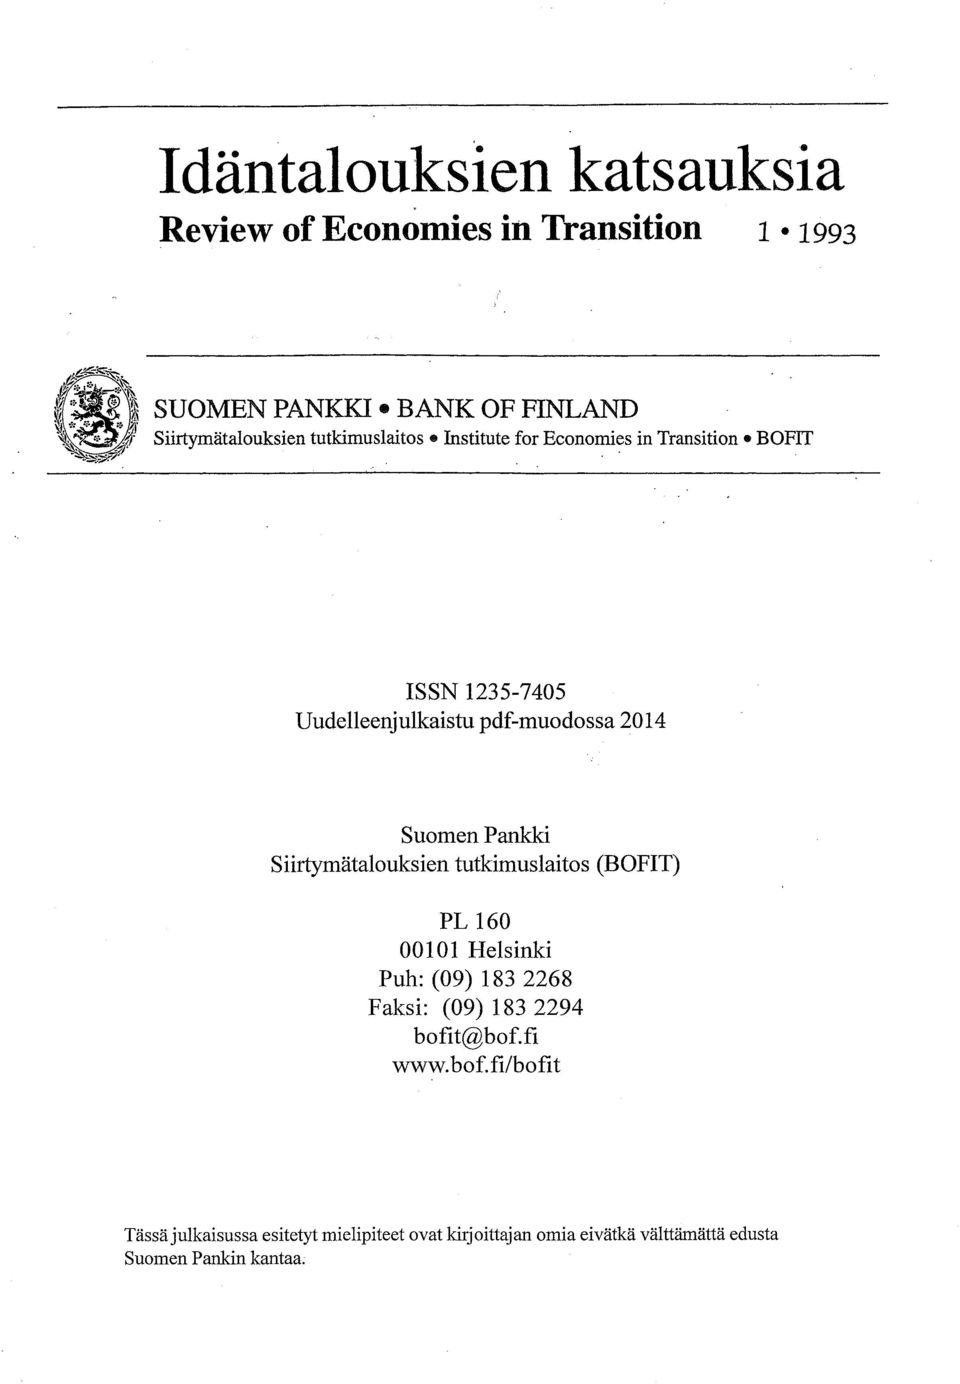 . nstitute for Economies in Transition BOFT SSN 1235-7405 Uudelleenjulkaistu pdf-muodossa 2014 Suomen Pankki